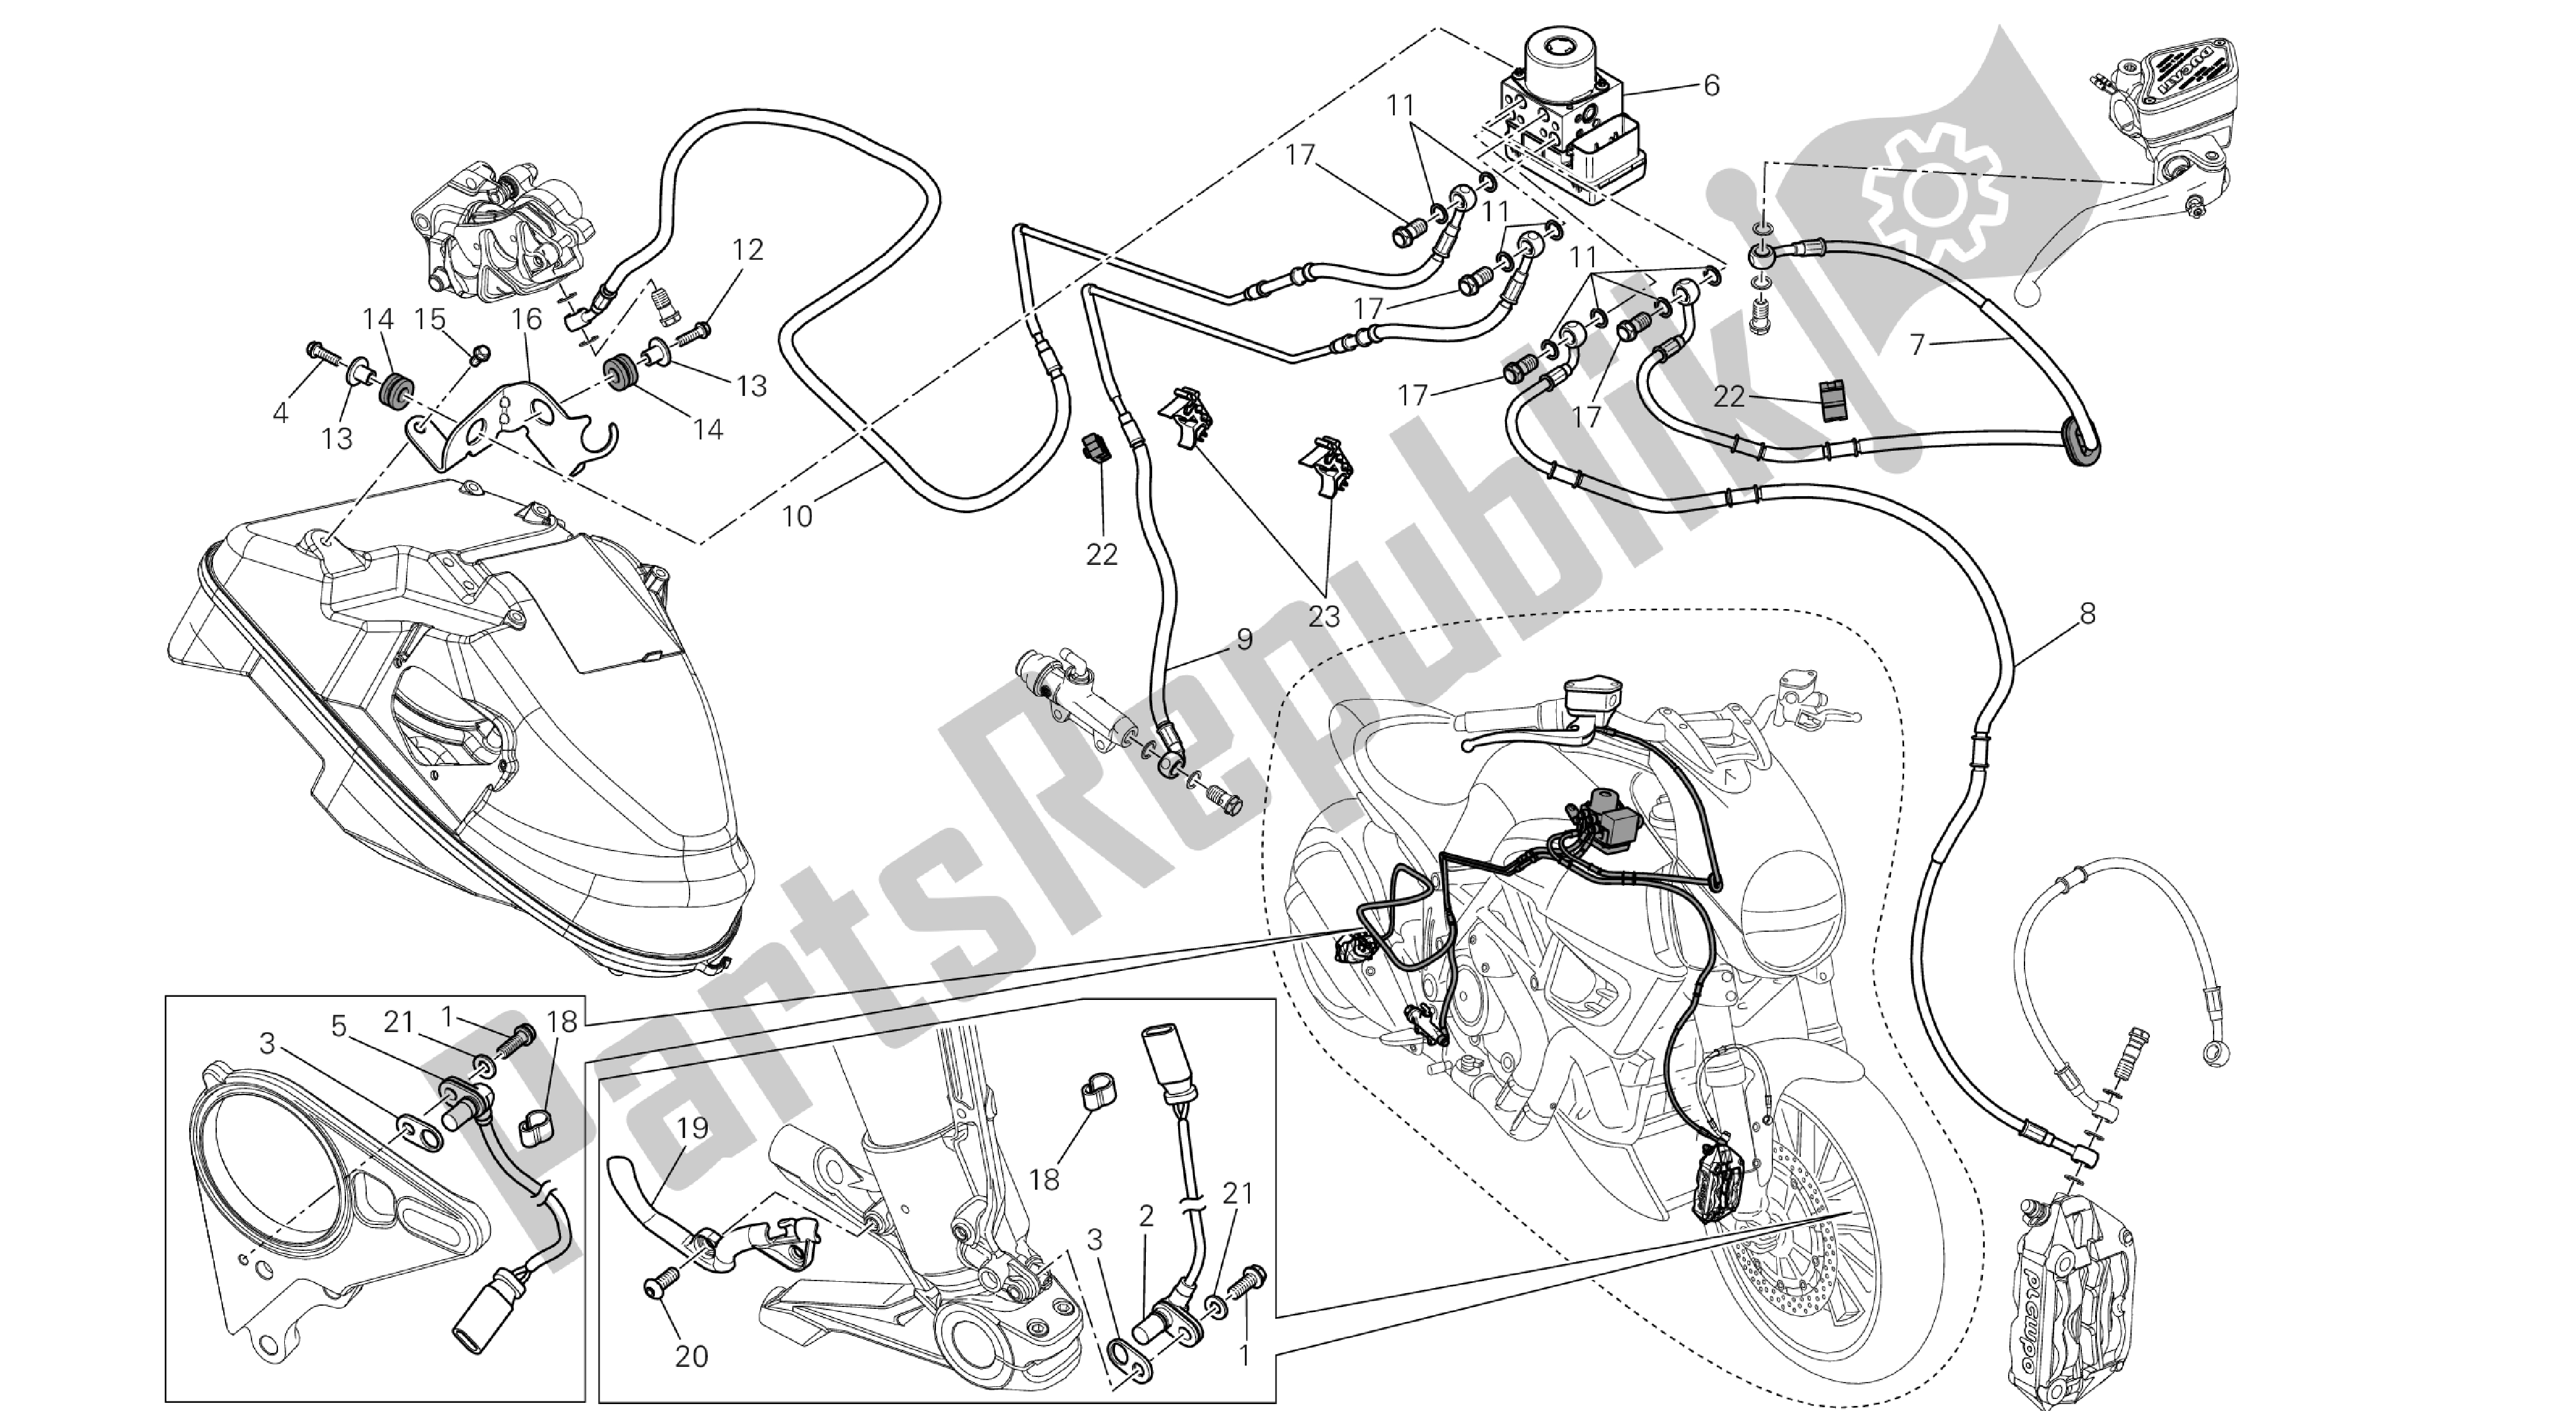 Tutte le parti per il Disegno 24a - Sistema Di Frenatura Abs [mod: Dvl; Xs T: A Us, Bra, Ch N, E Ur, F Ra, Jap, Th Ai] Group Fr Ame del Ducati Diavel 1200 2013